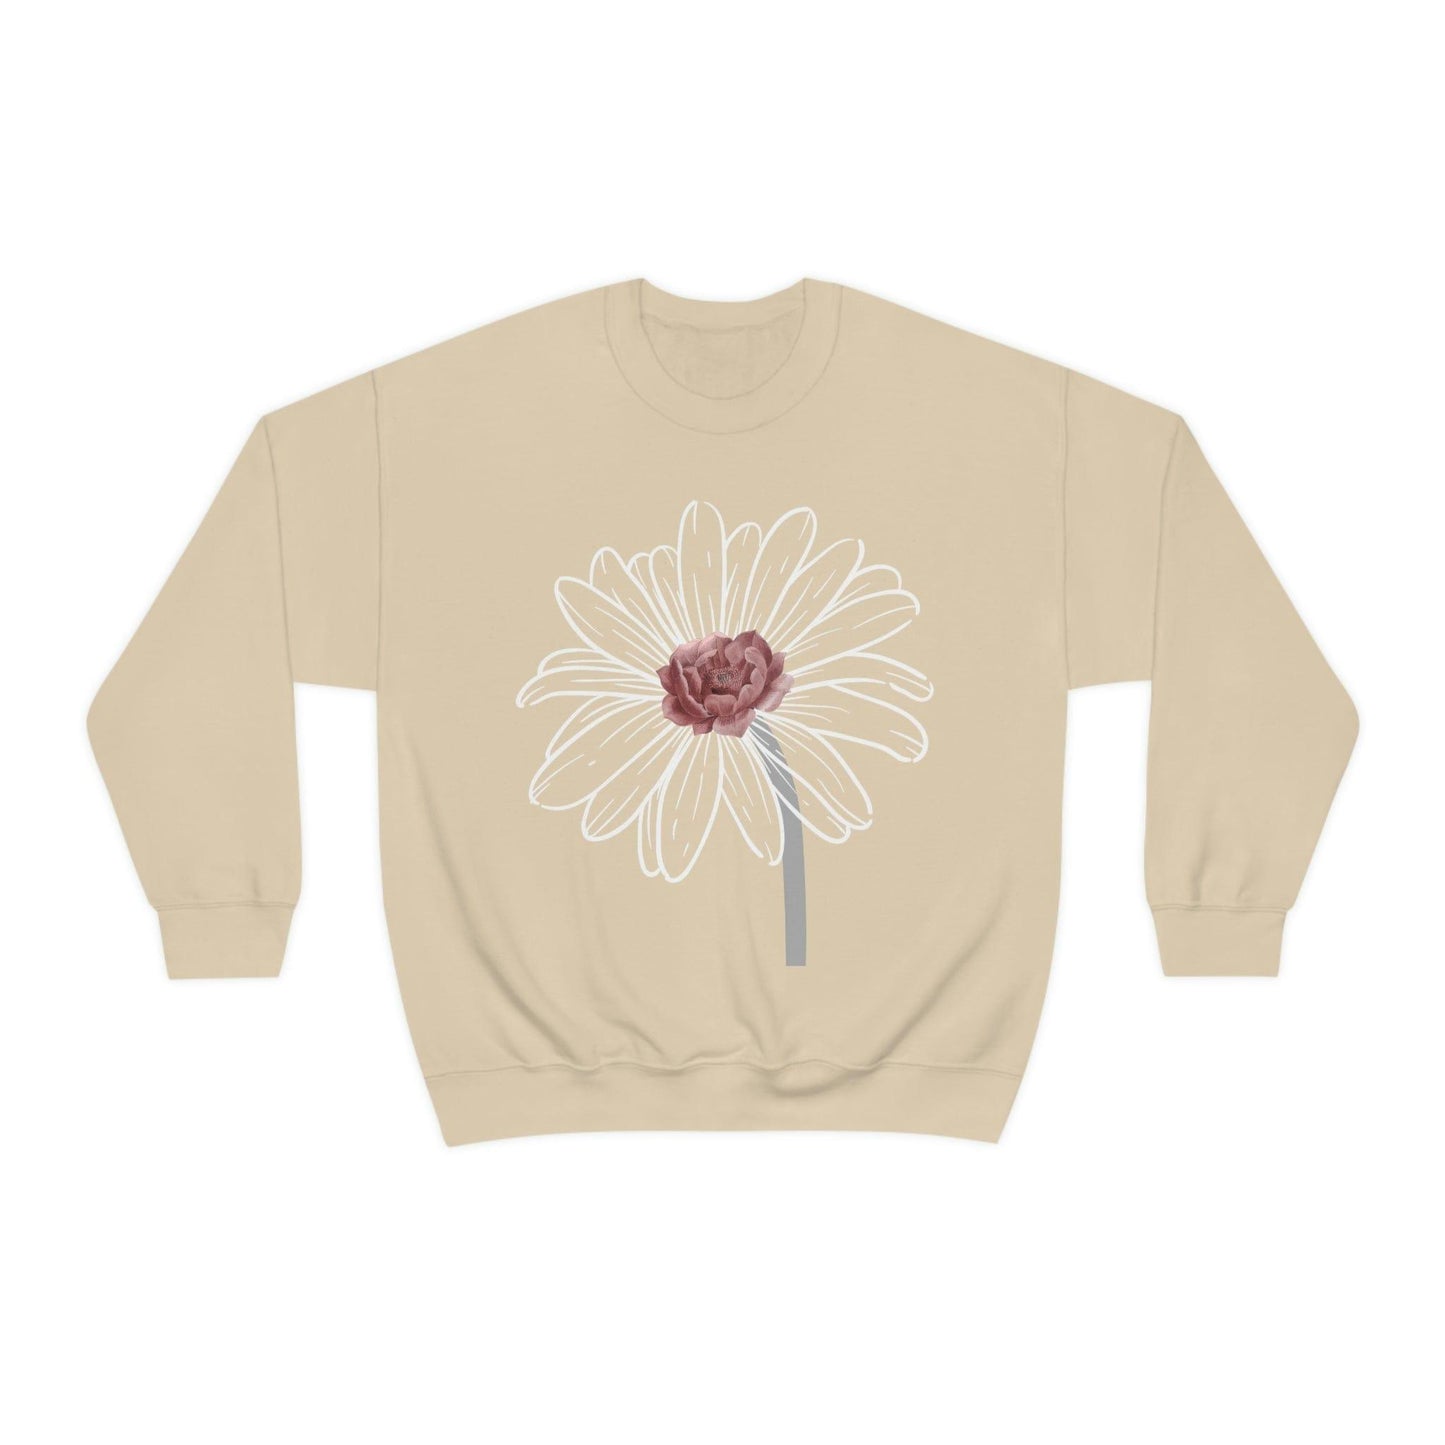 Floral Sweatshirt, Wildflower Sweatshirt, Flower sweatshirt, Wild Flowers